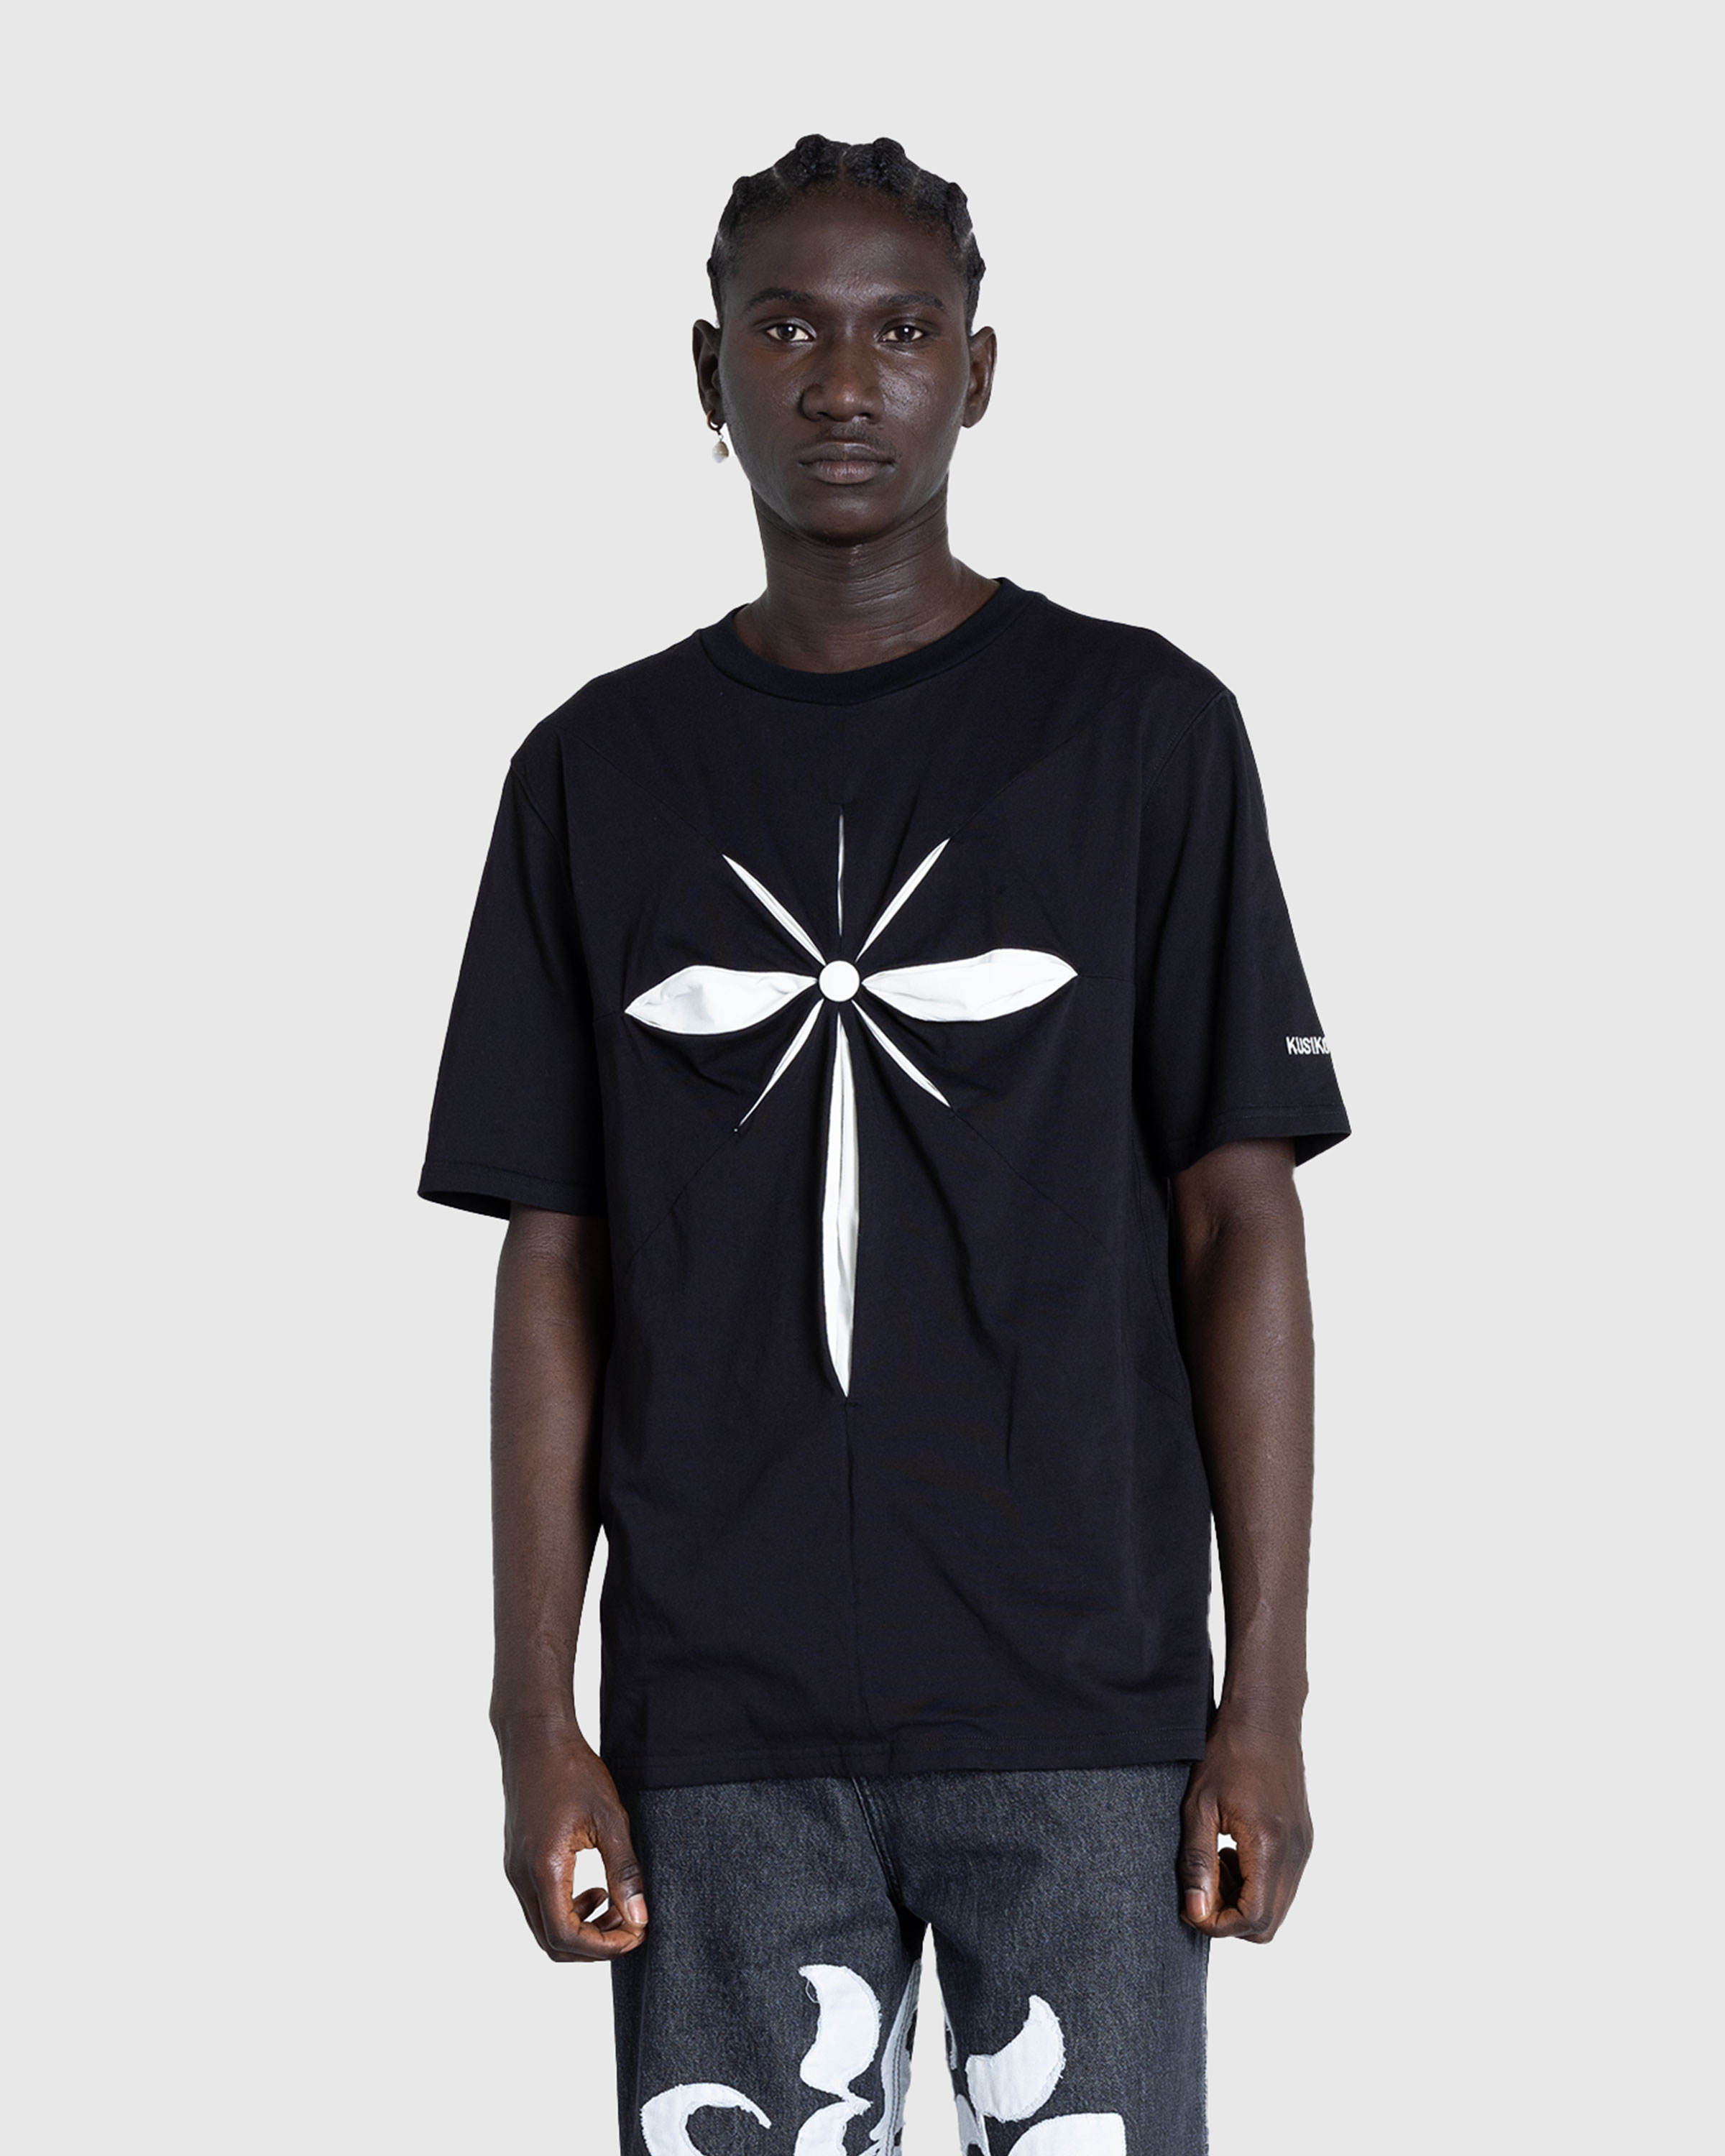 KUSIKOHC – Origami T-Shirt Black/White Alyssum | Highsnobiety Shop